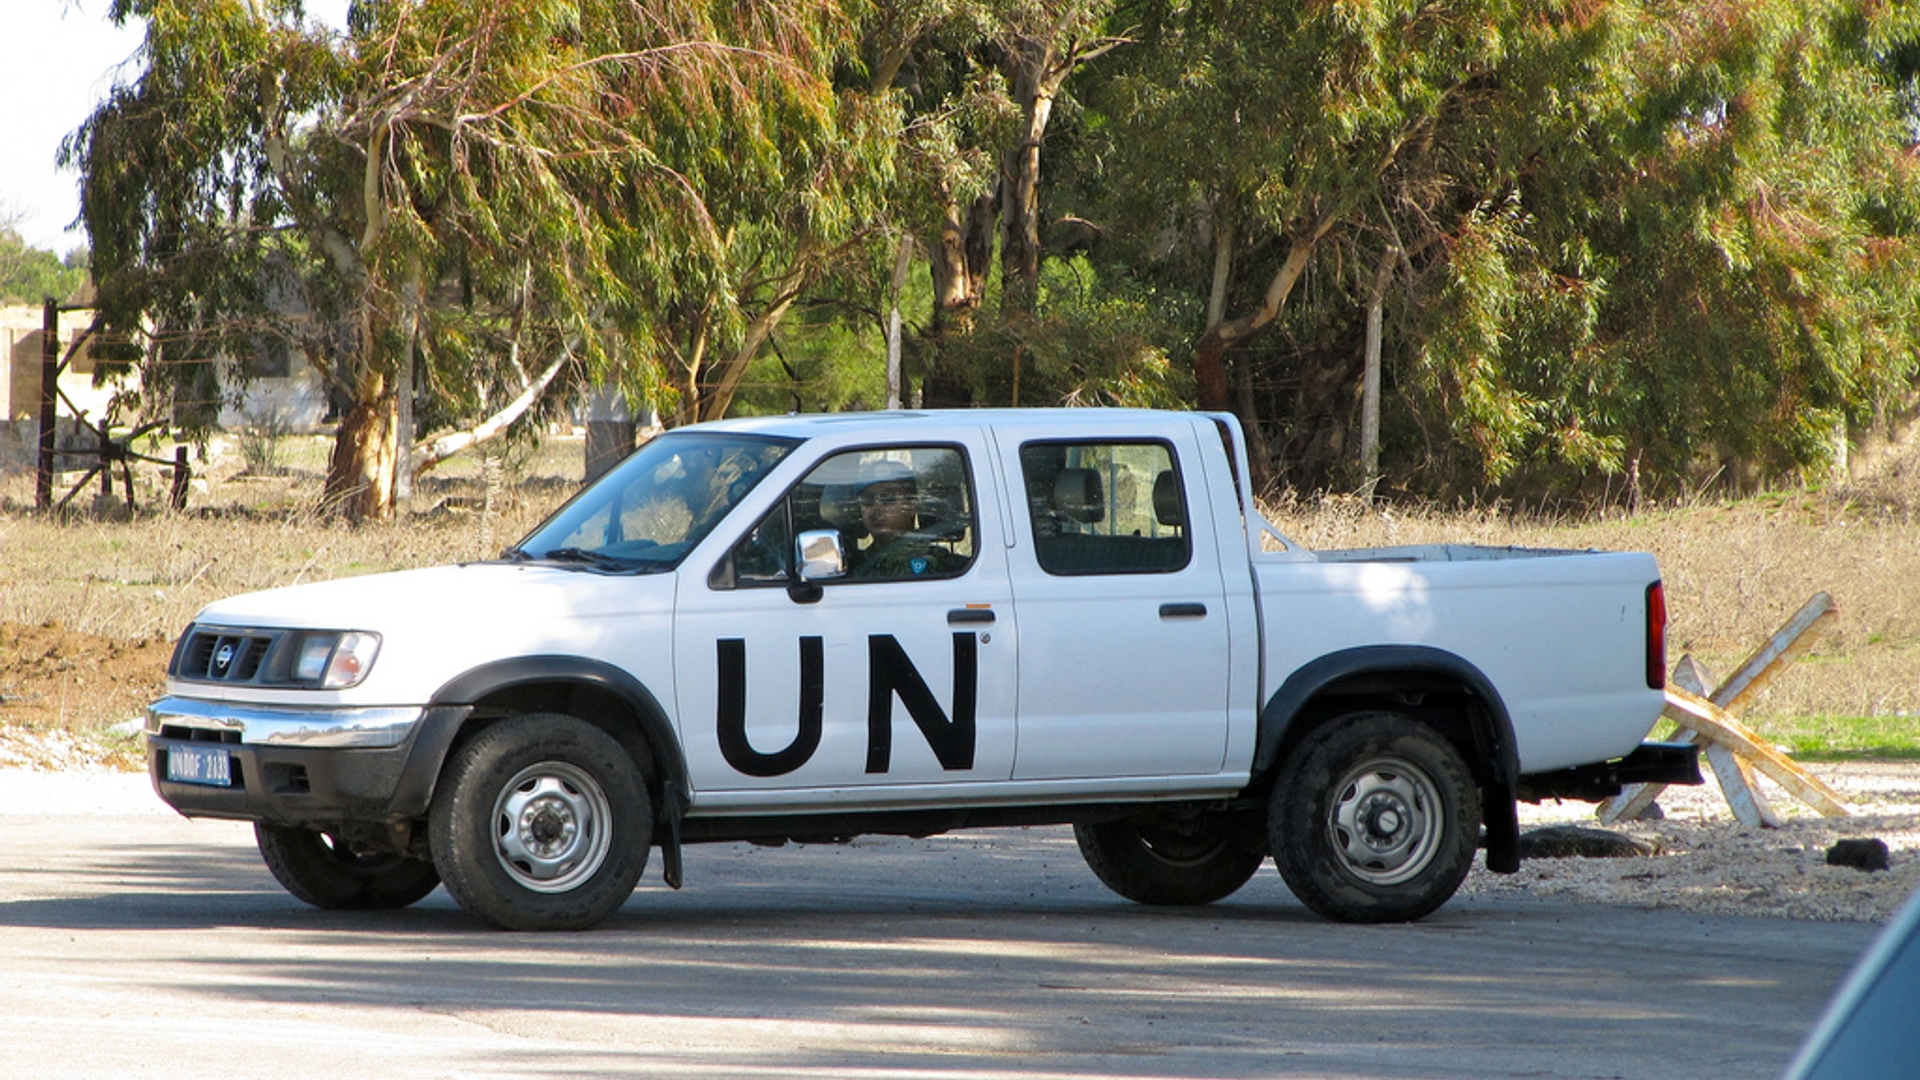 A UN Patrol Car